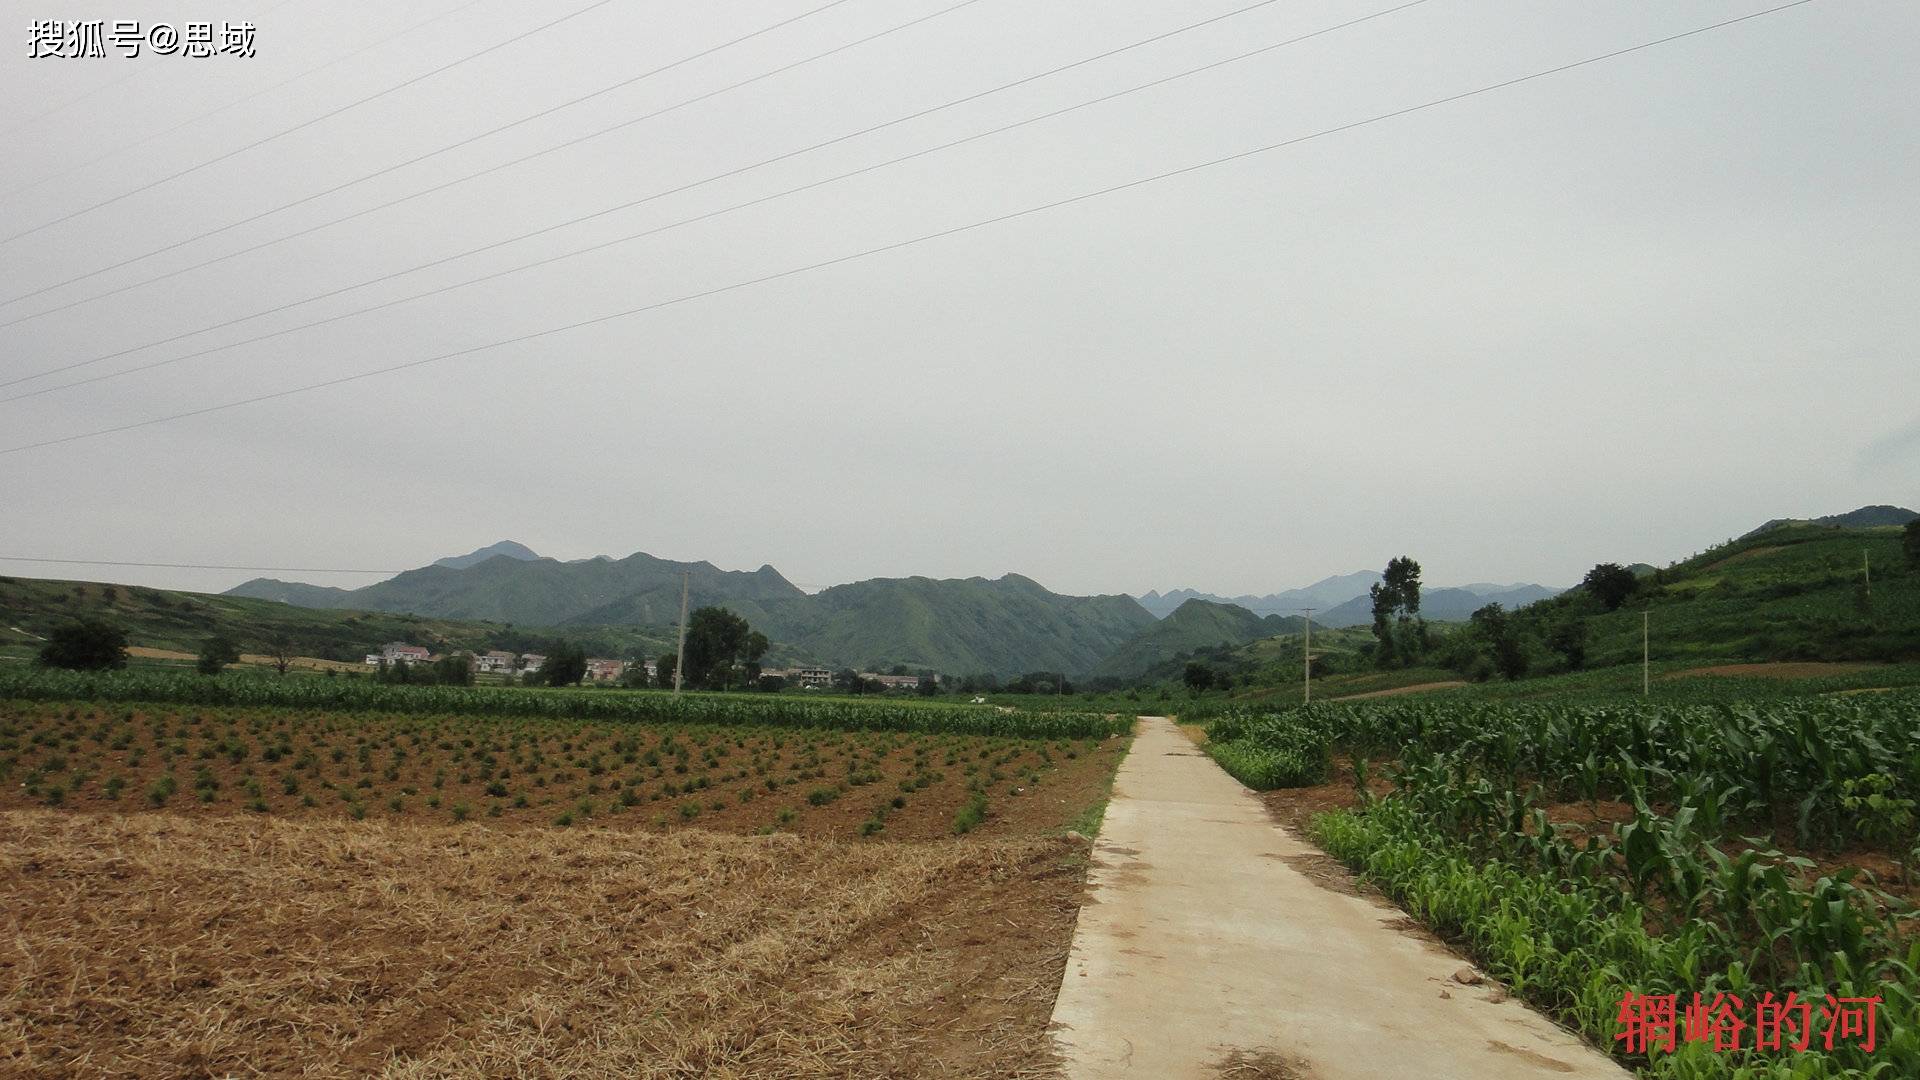 走遍蓝田，2014玉山镇（刘家山村）穿越旅行（1）。